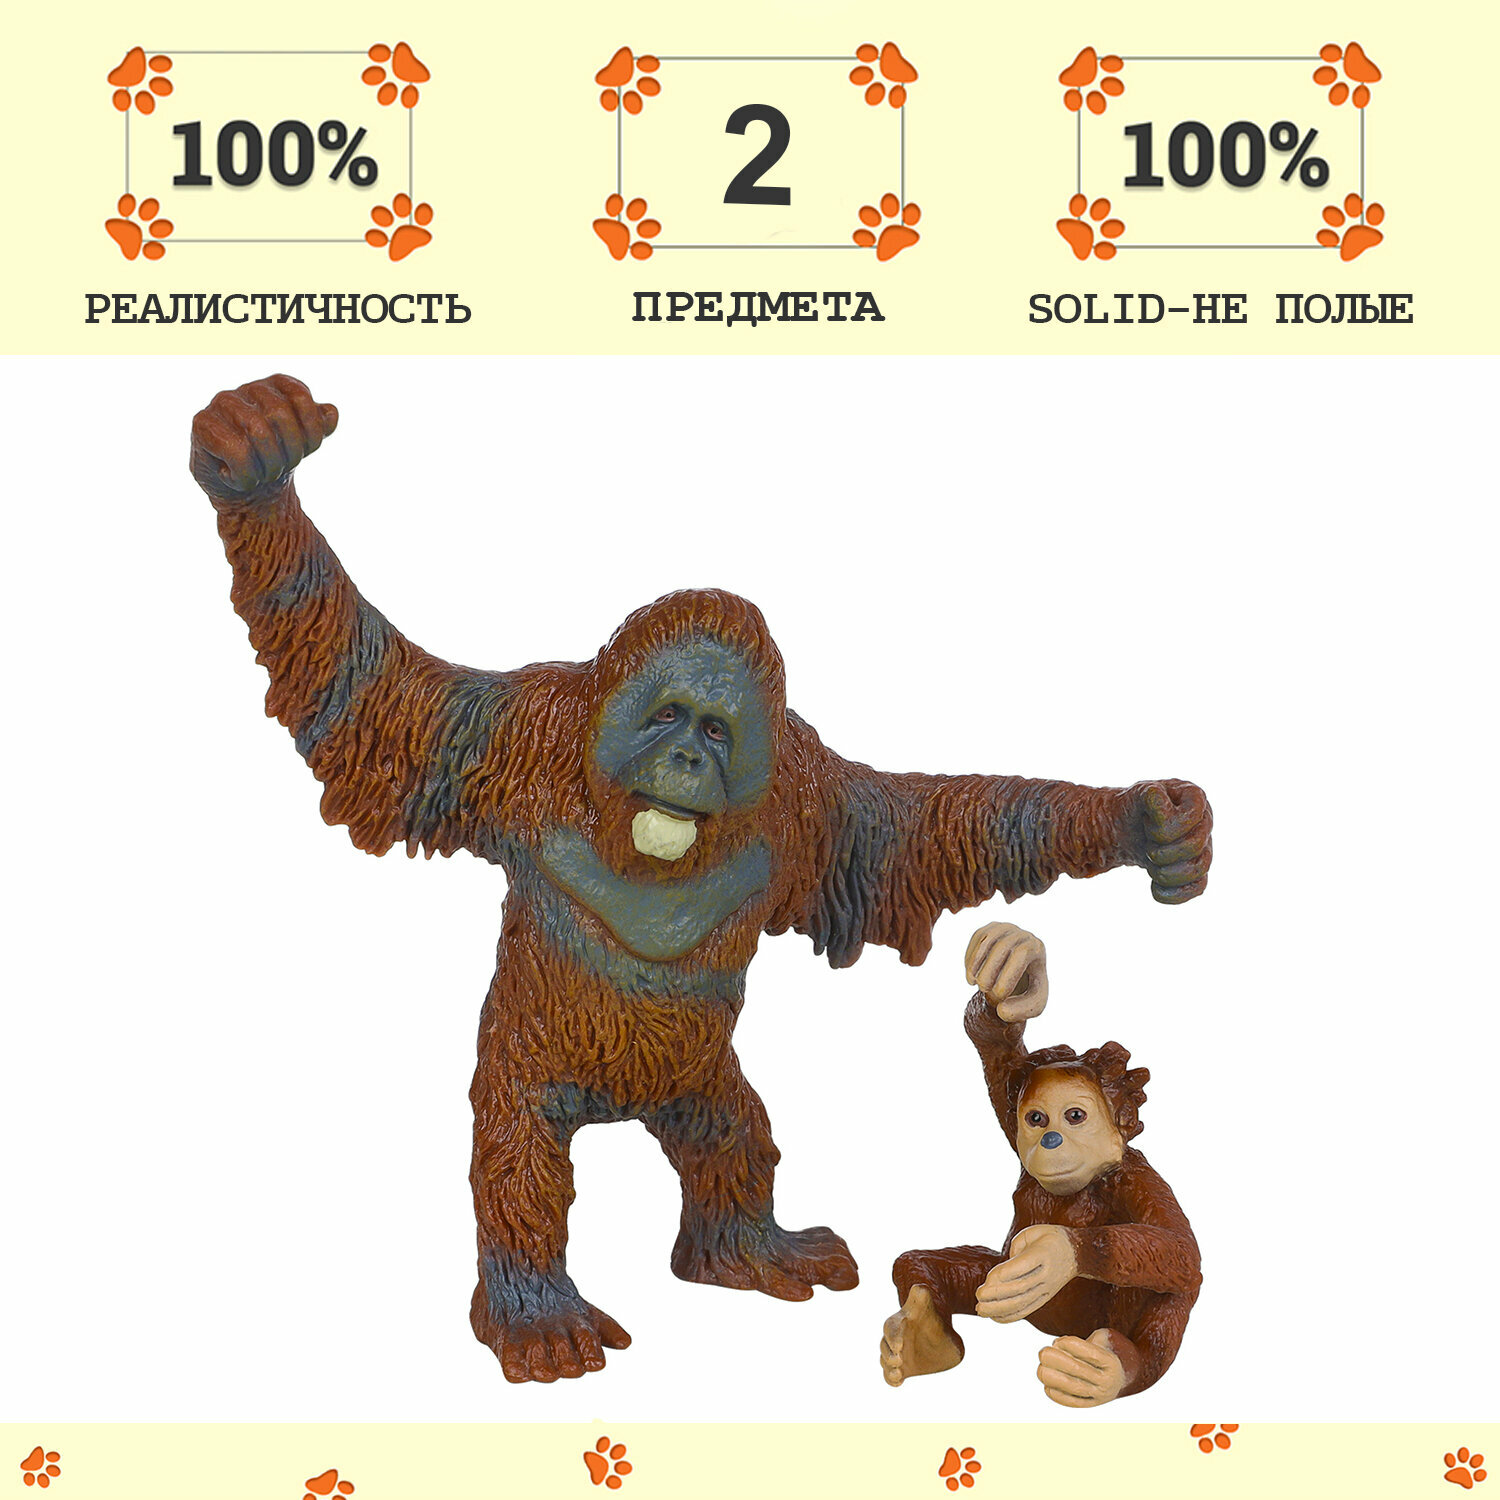 Набор фигурок животных серии "Мир диких животных": Семья орангутанов, 2 предмета (орангутан папа и детеныш)